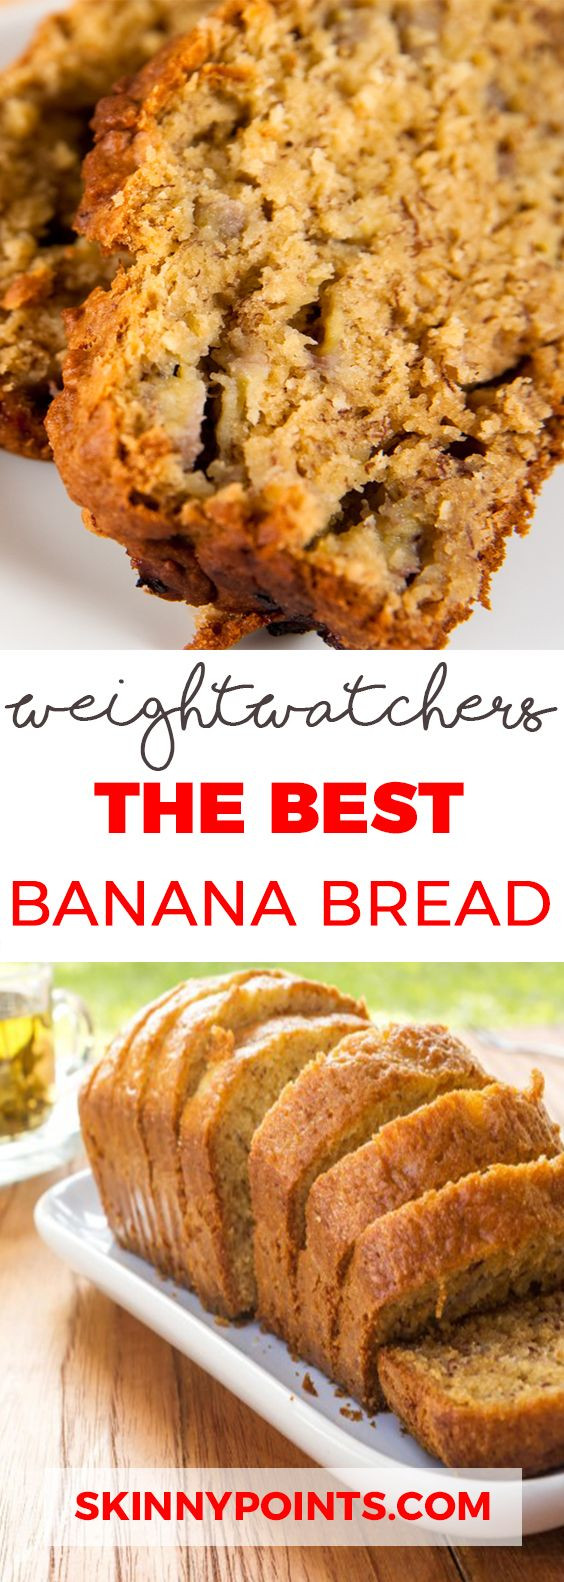 Weight Watcher Desserts With Points
 25 Best Weight Watchers Desserts Recipes with SmartPoints